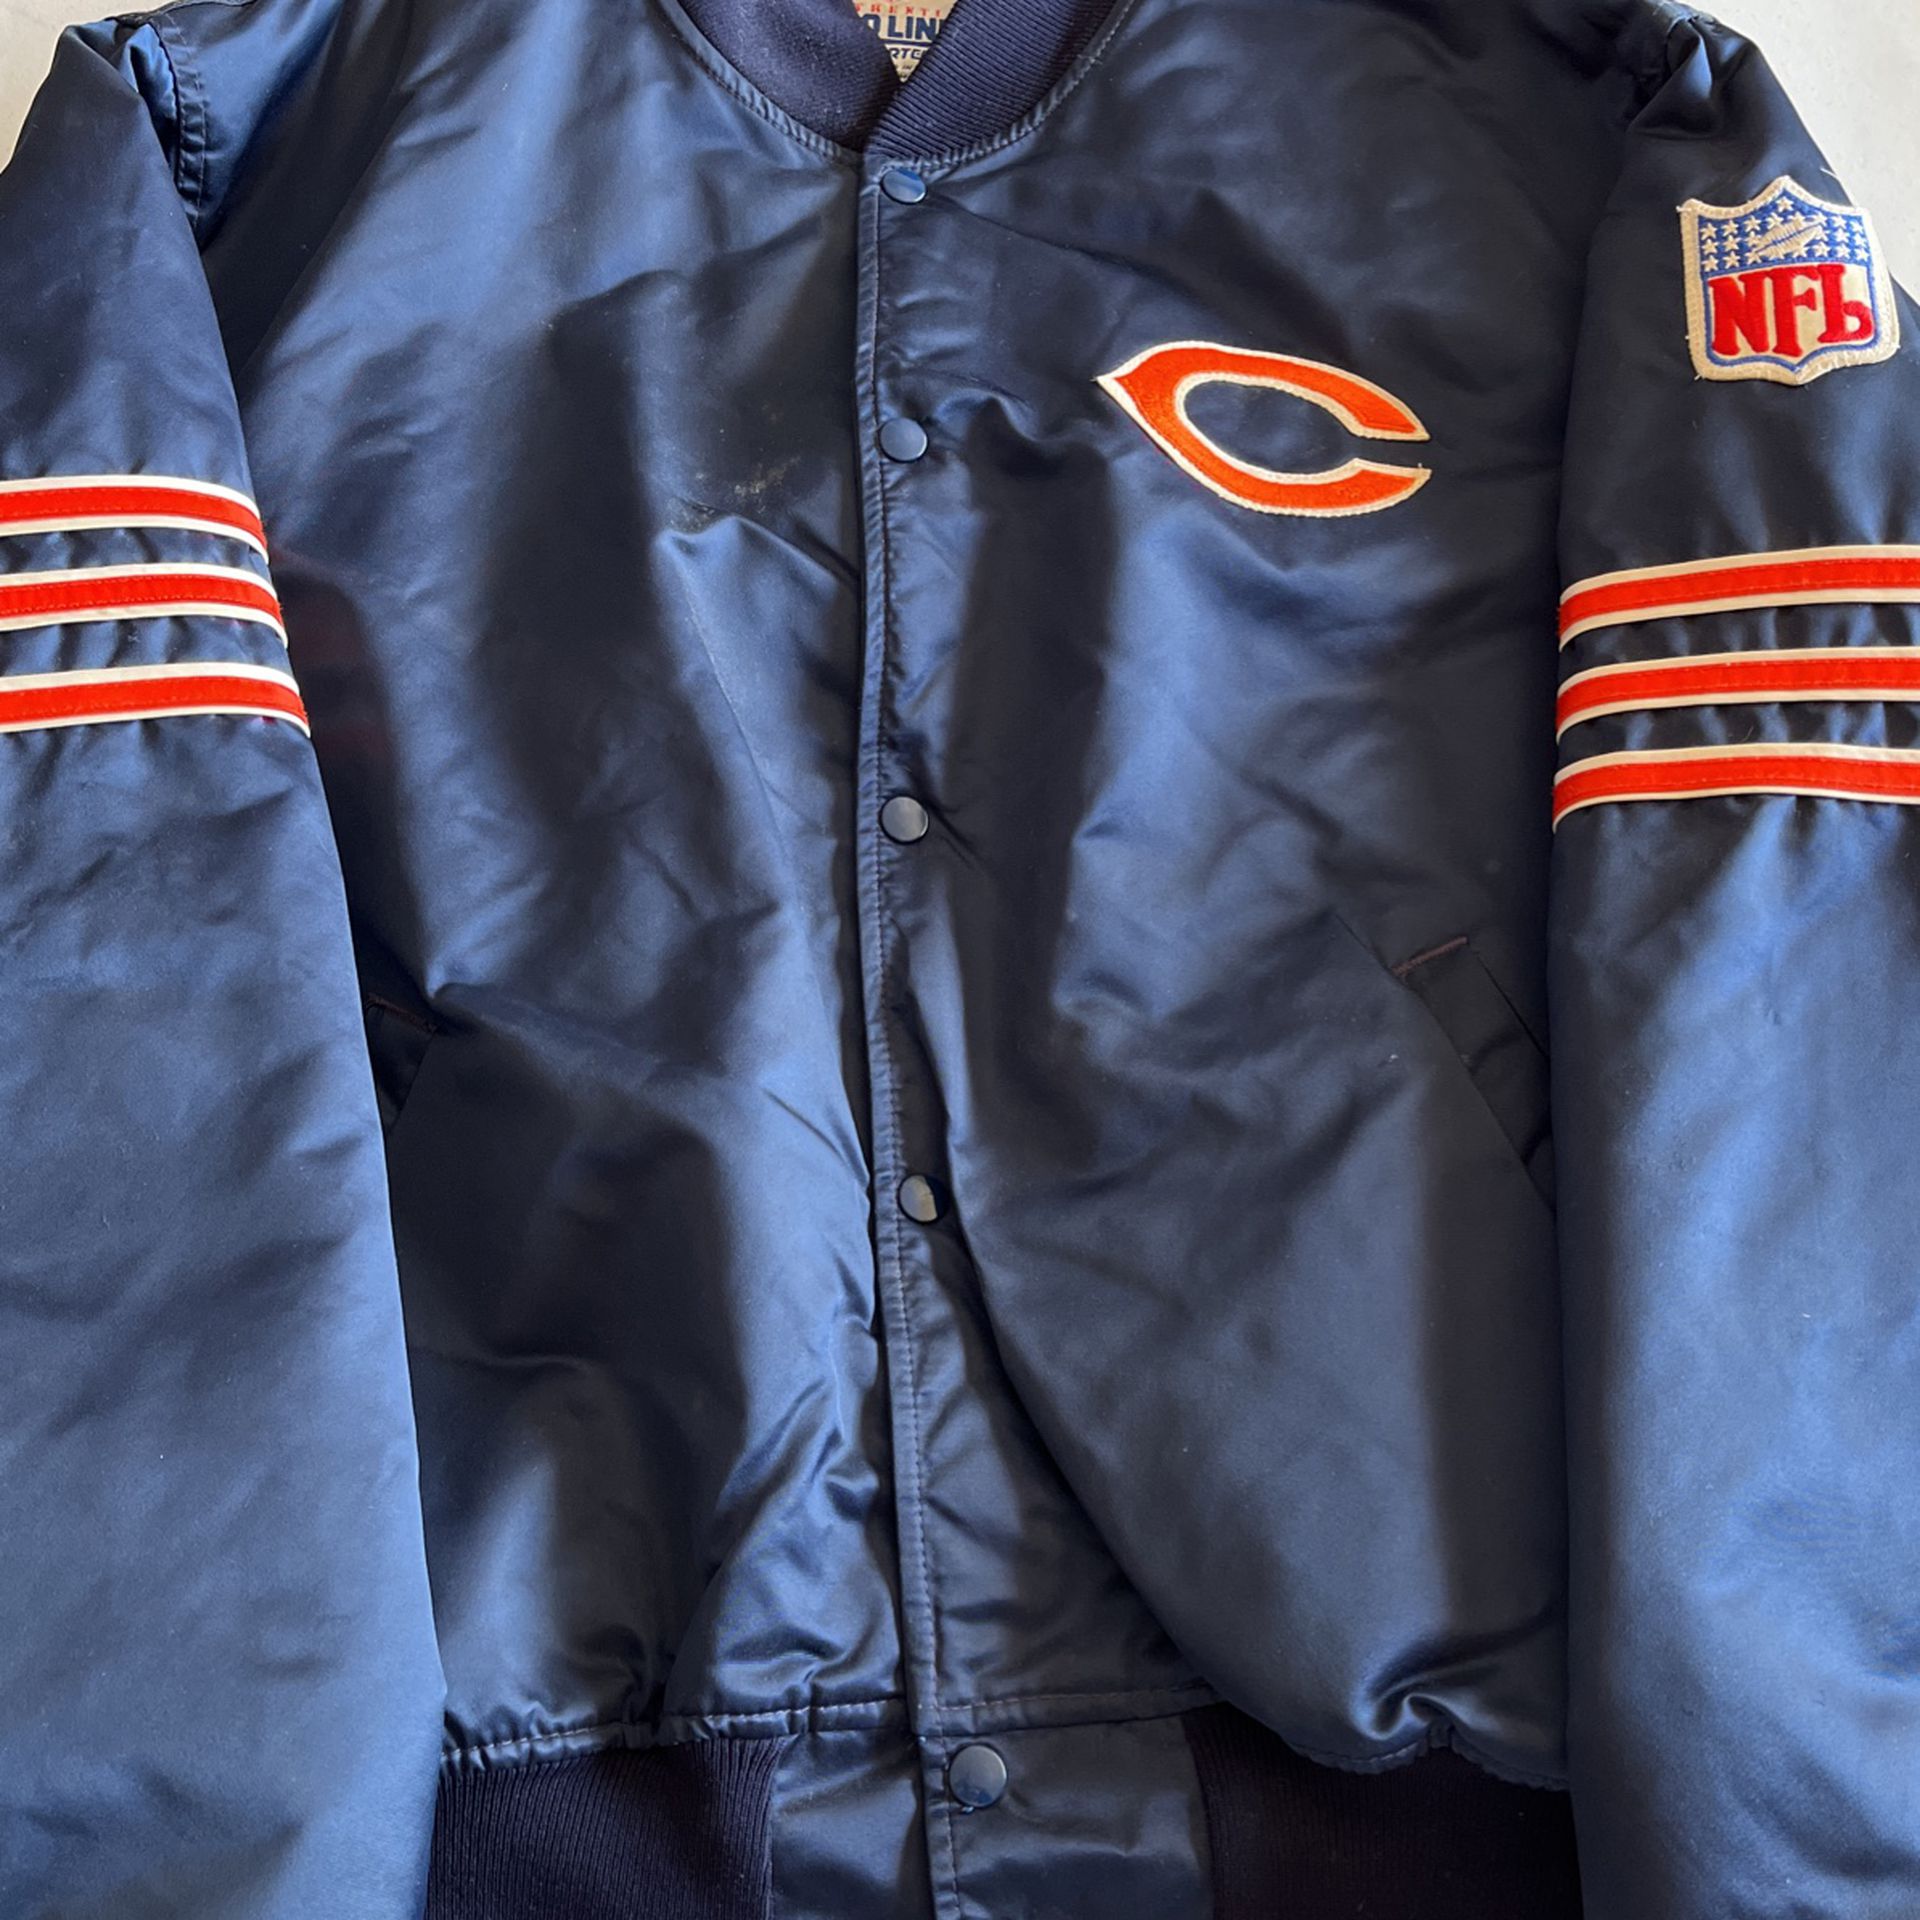 Chicago Bears Football Satin Bomber Jacket for Sale in Tucson, AZ